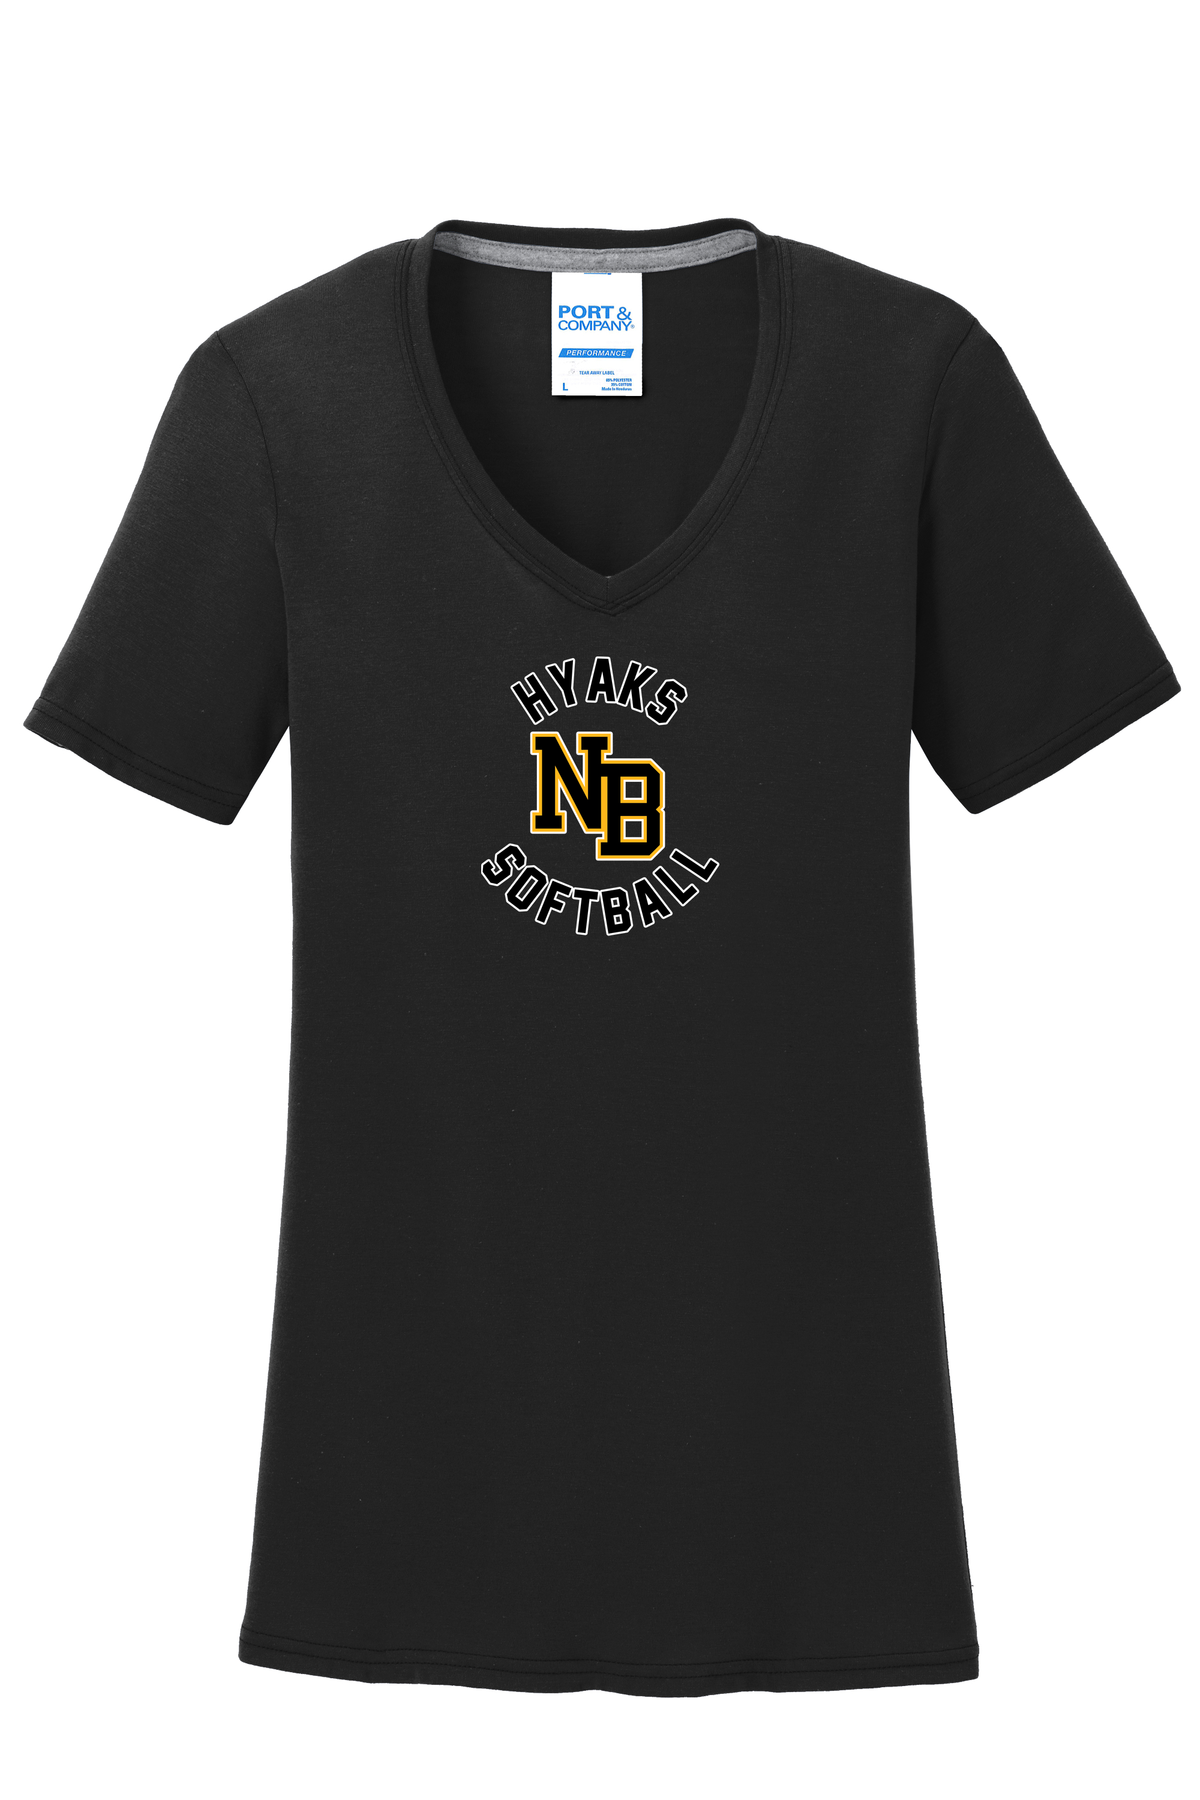 North Beach Softball Women's T-Shirt